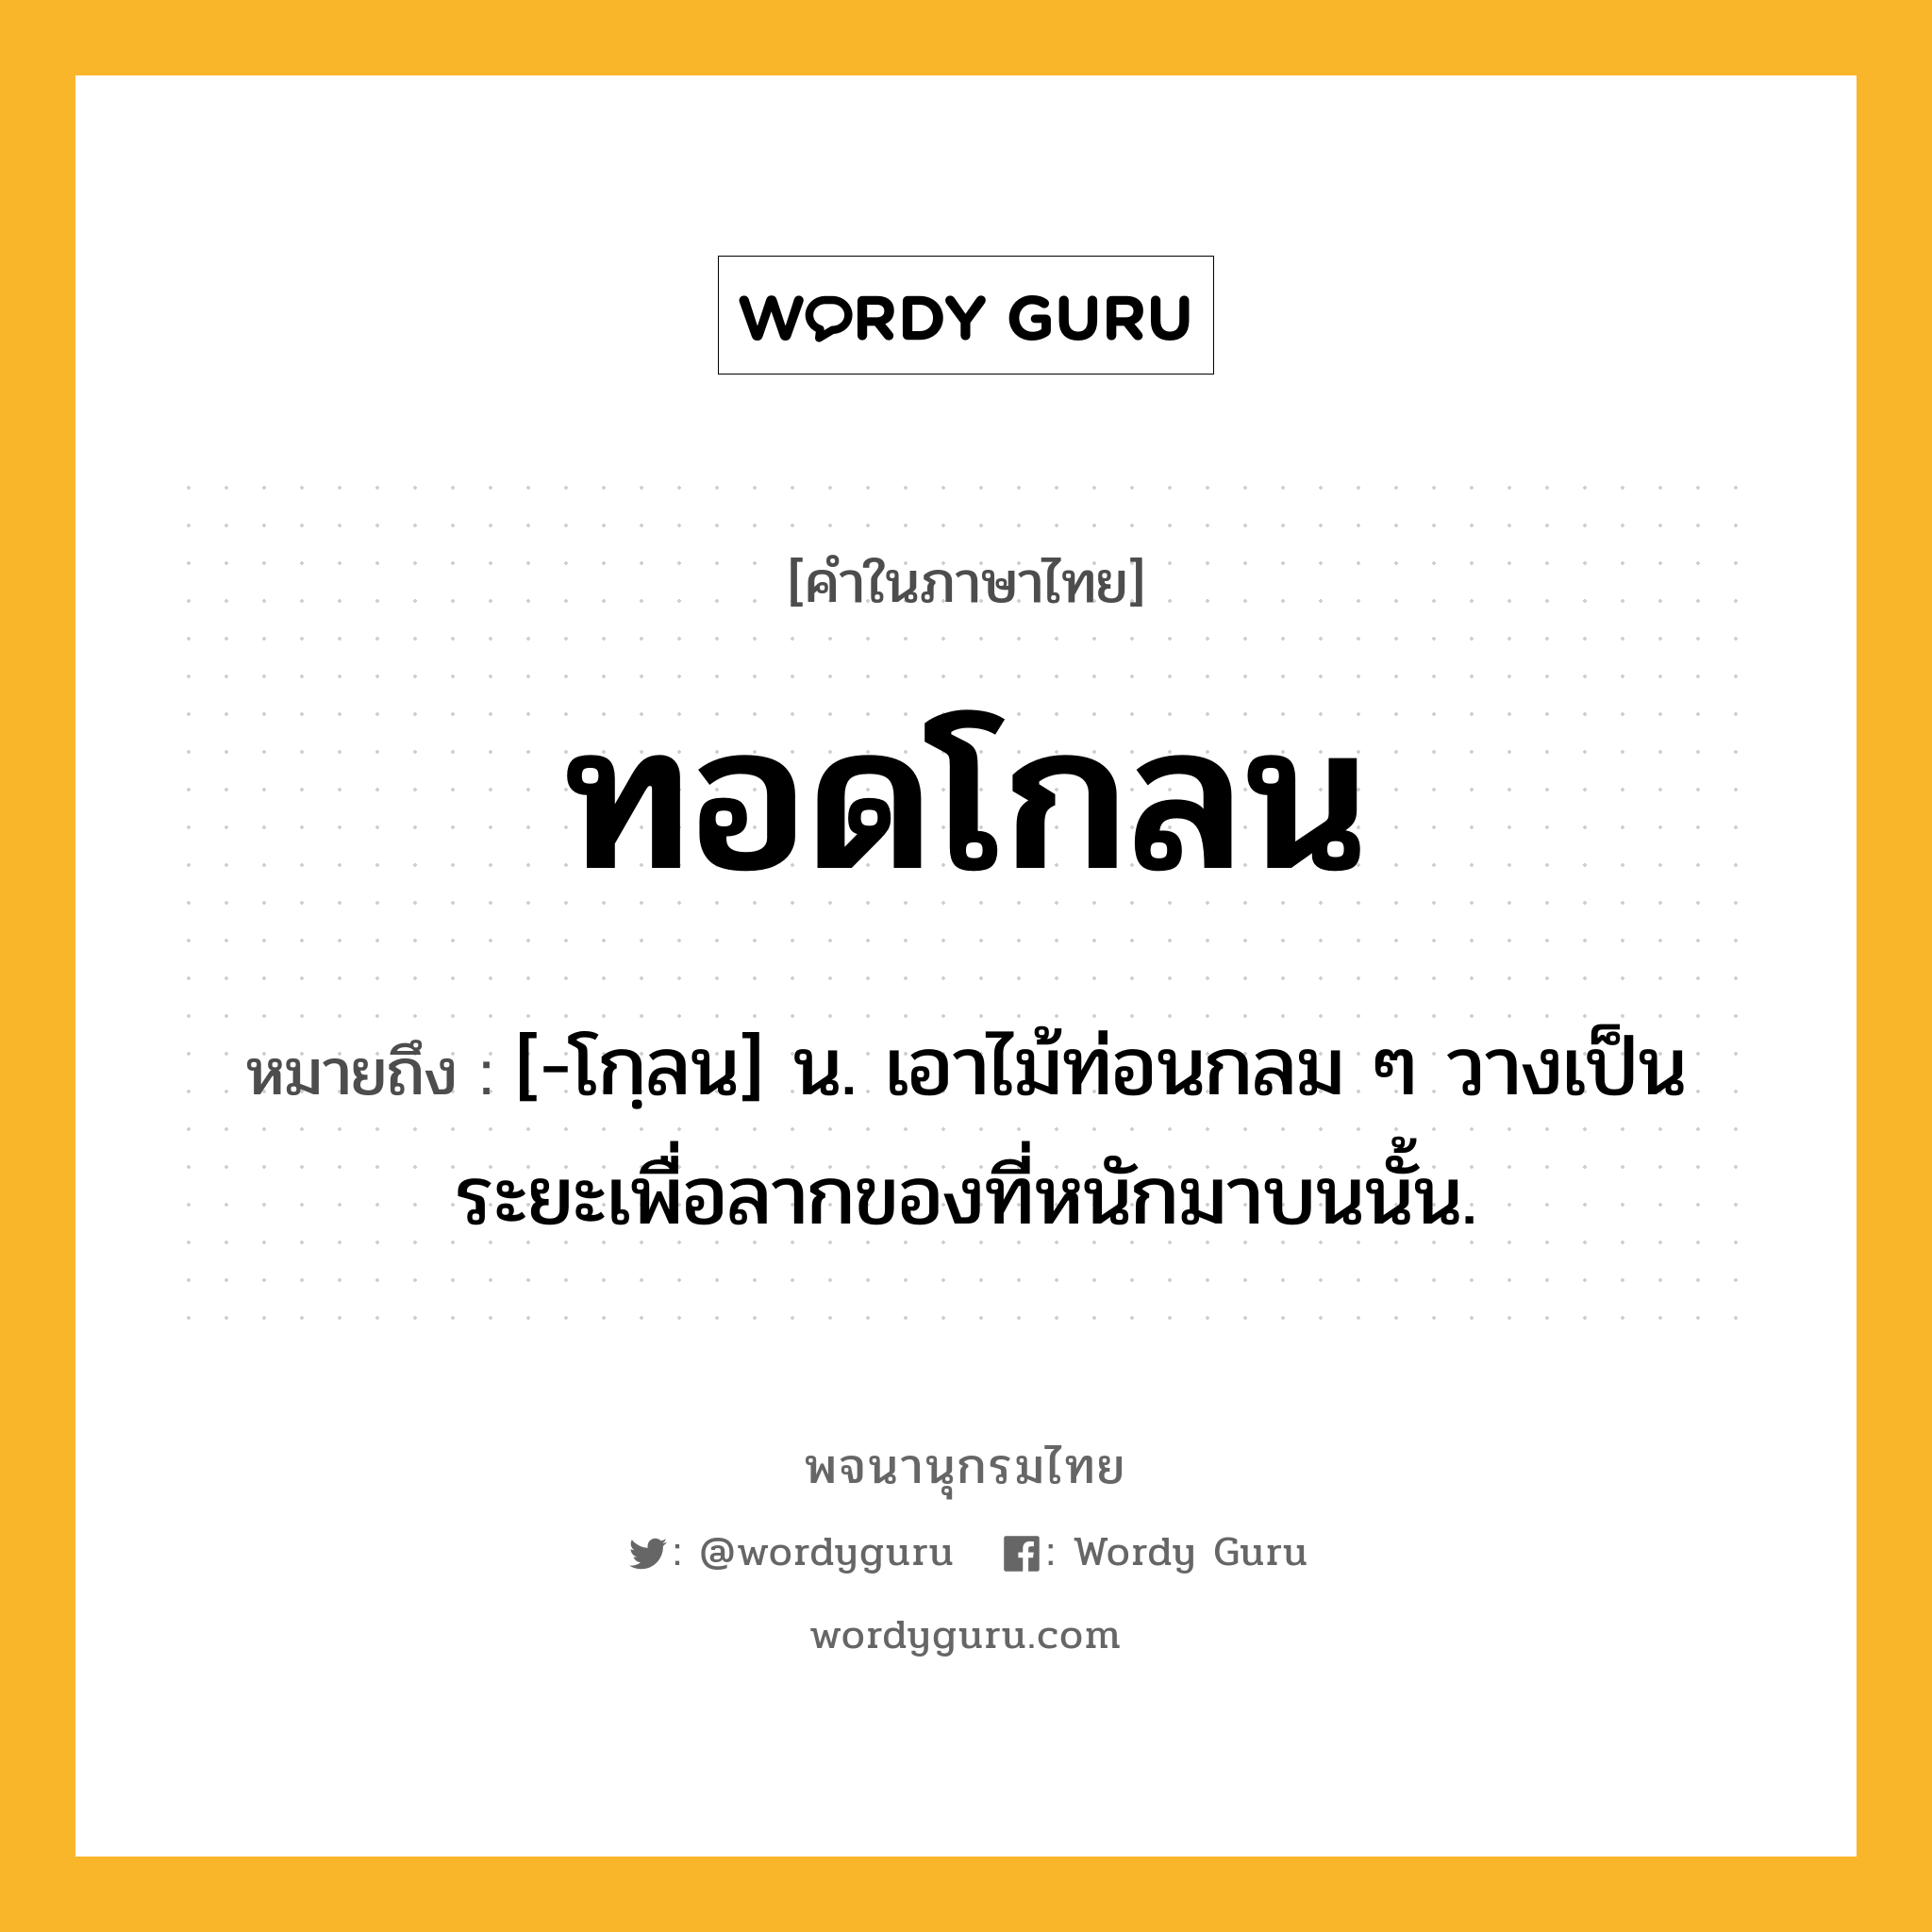 ทอดโกลน ความหมาย หมายถึงอะไร?, คำในภาษาไทย ทอดโกลน หมายถึง [-โกฺลน] น. เอาไม้ท่อนกลม ๆ วางเป็นระยะเพื่อลากของที่หนักมาบนนั้น.